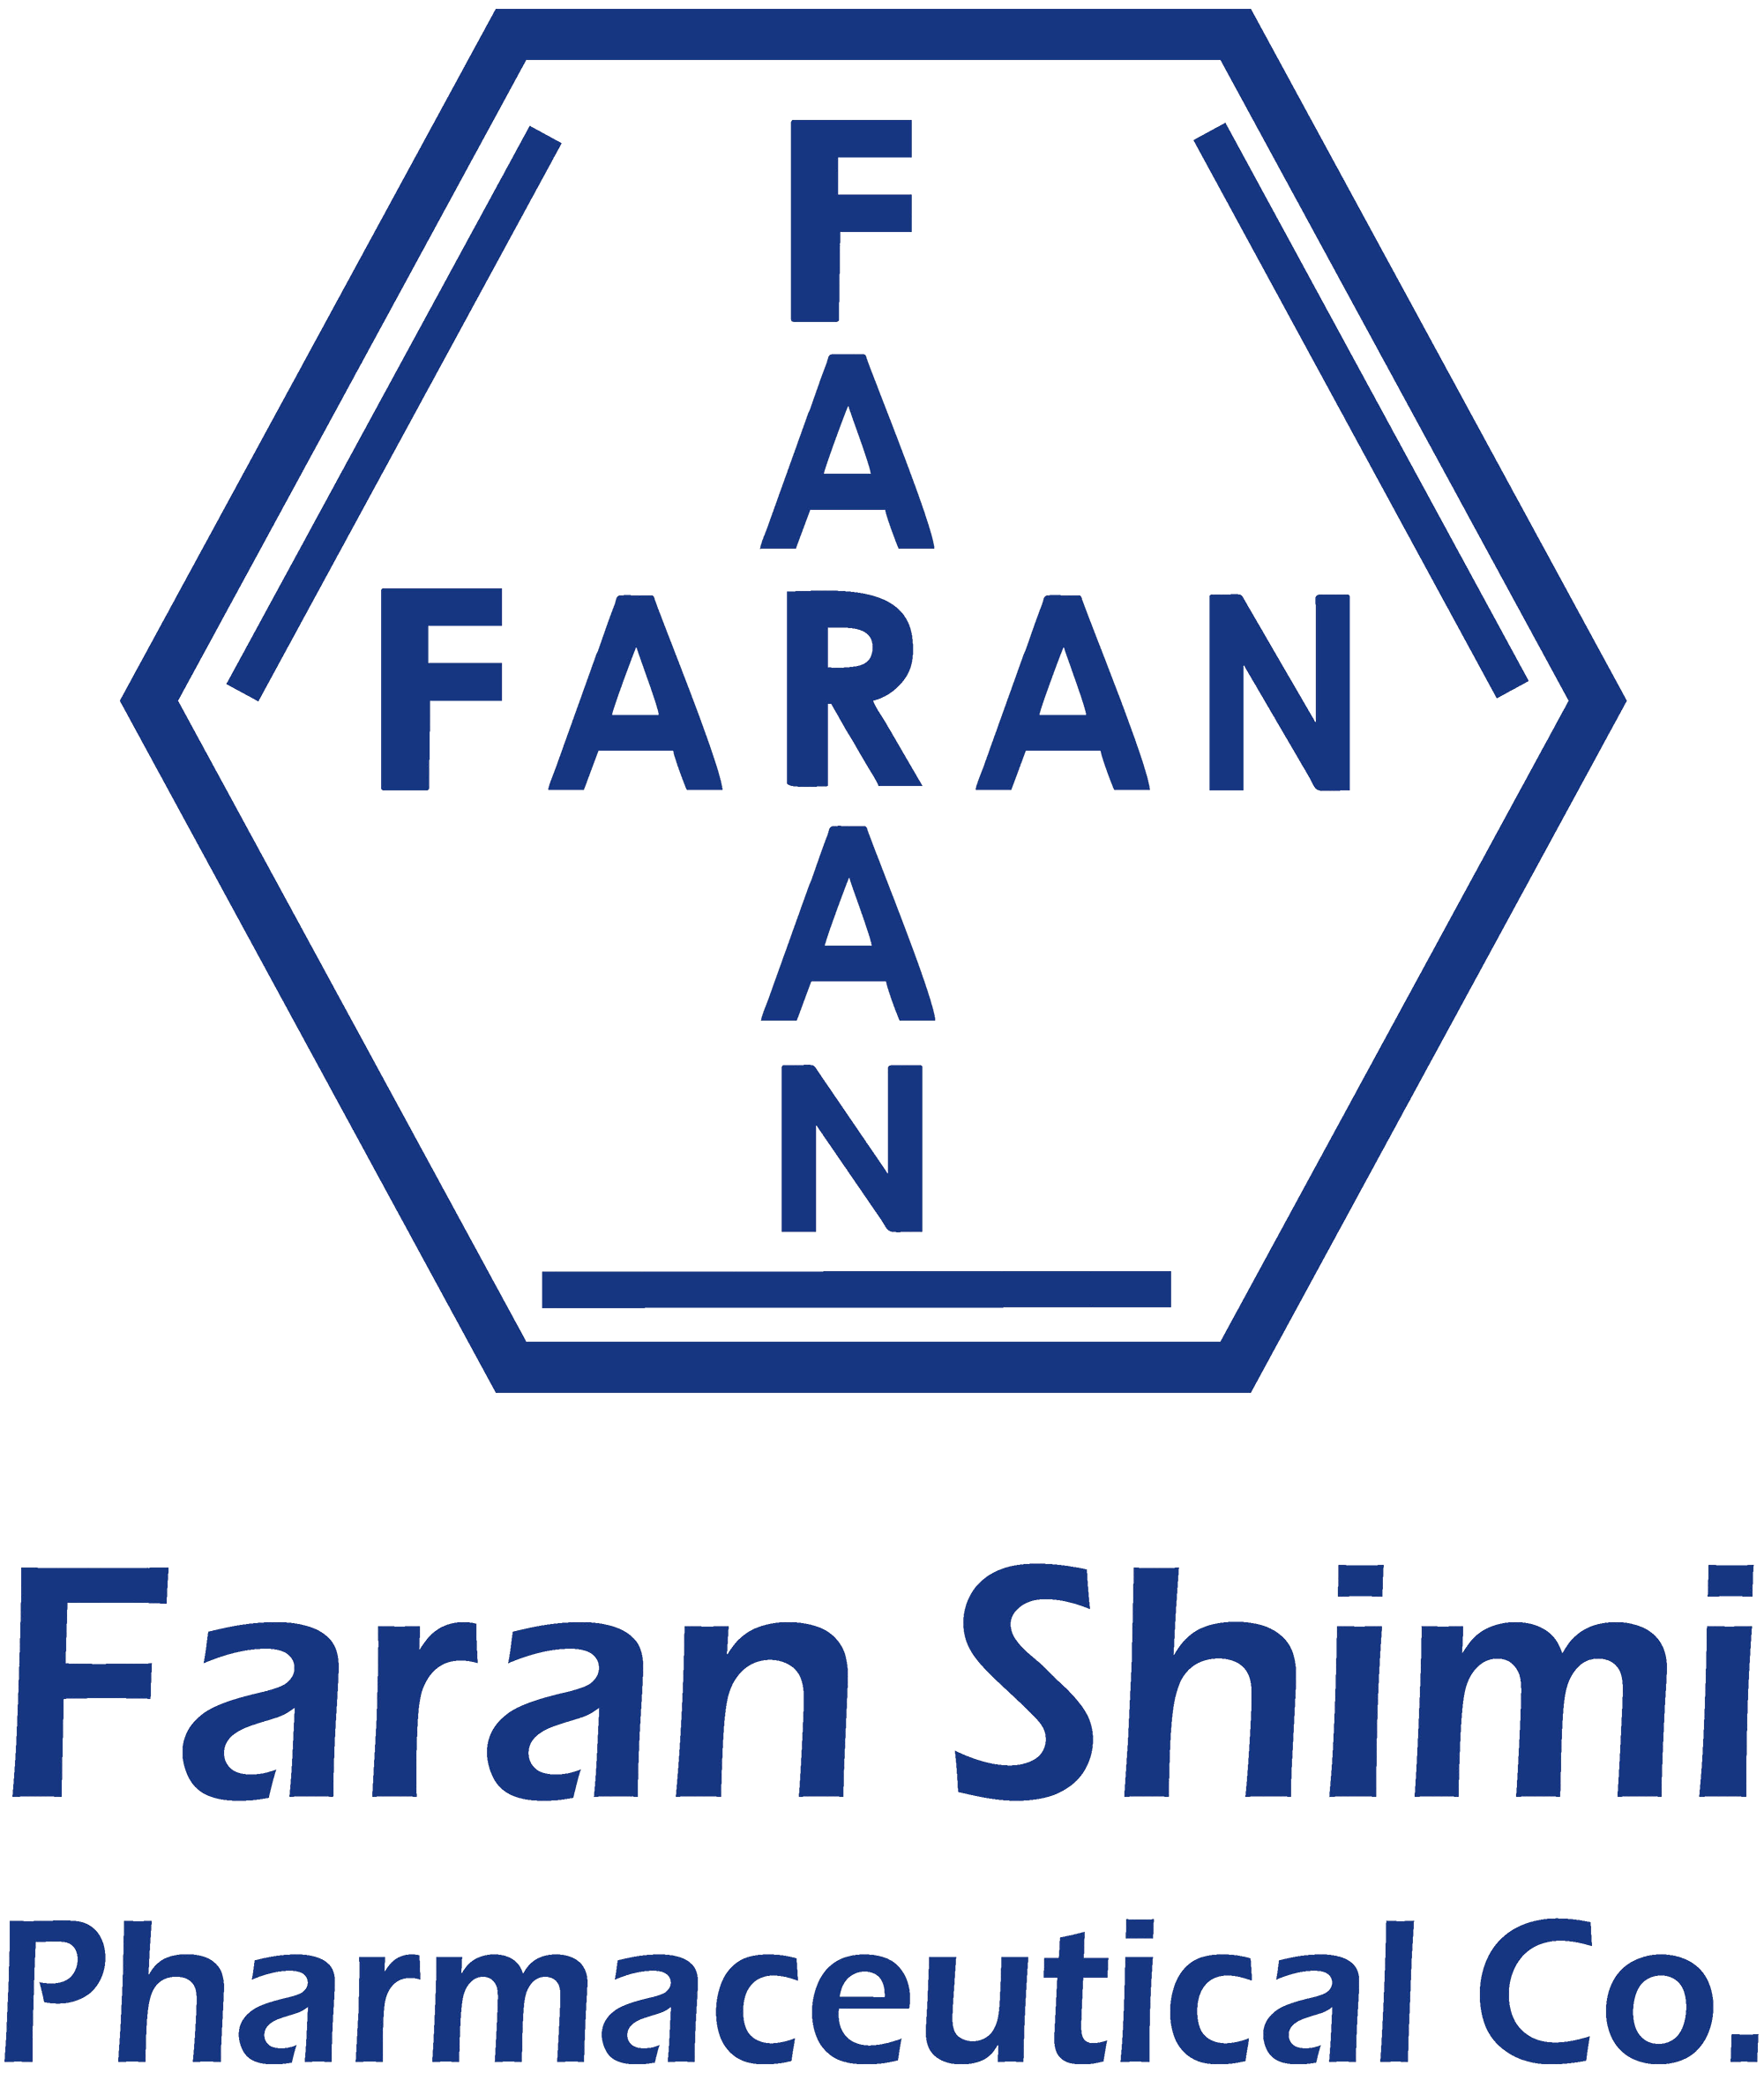 Faran Shimi